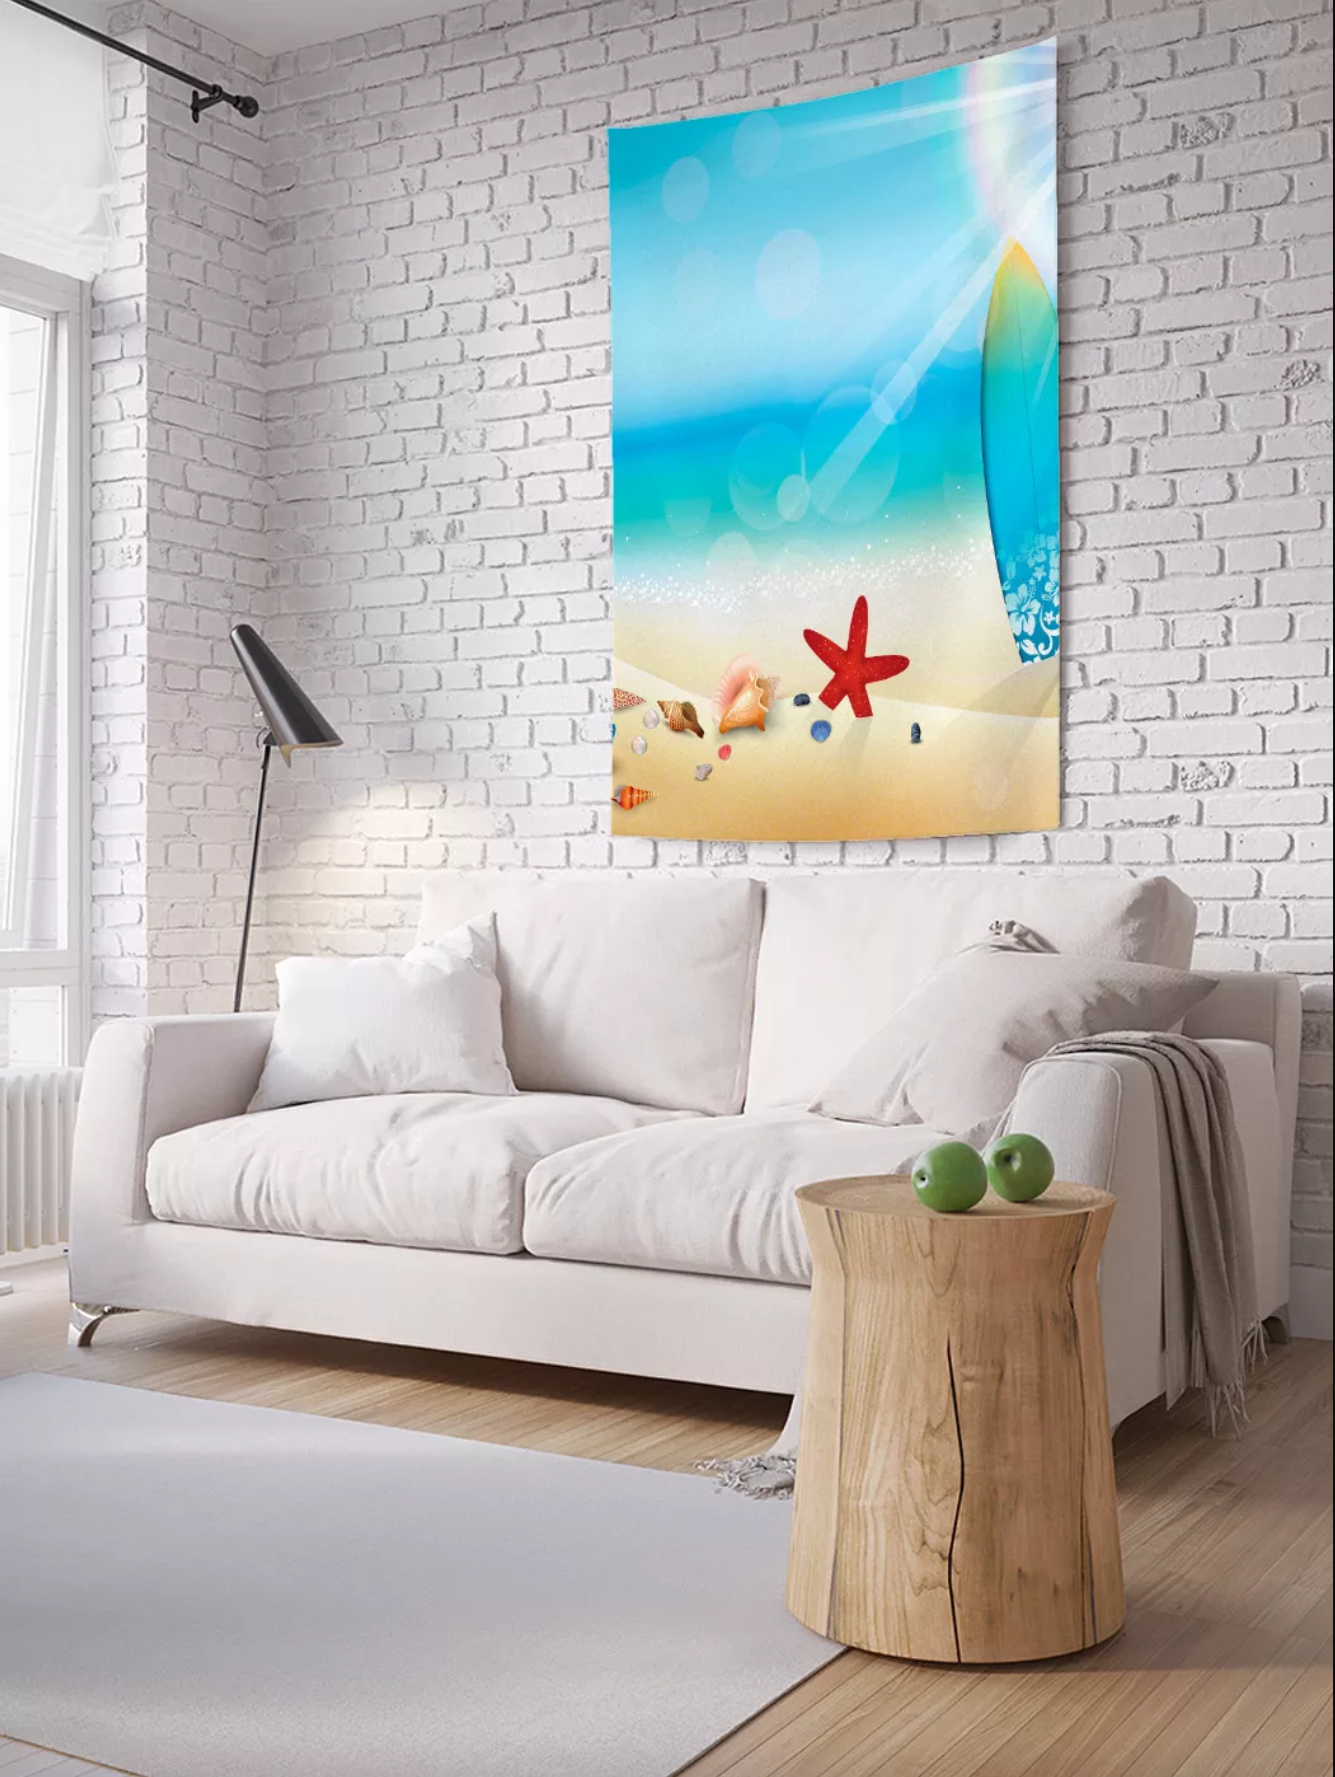 Постер на экокоже 60x90 LinxOne "Кресло, мебель, интерьер, стиль" интерьер для дома / декор на стену / дизайн - фотография № 5